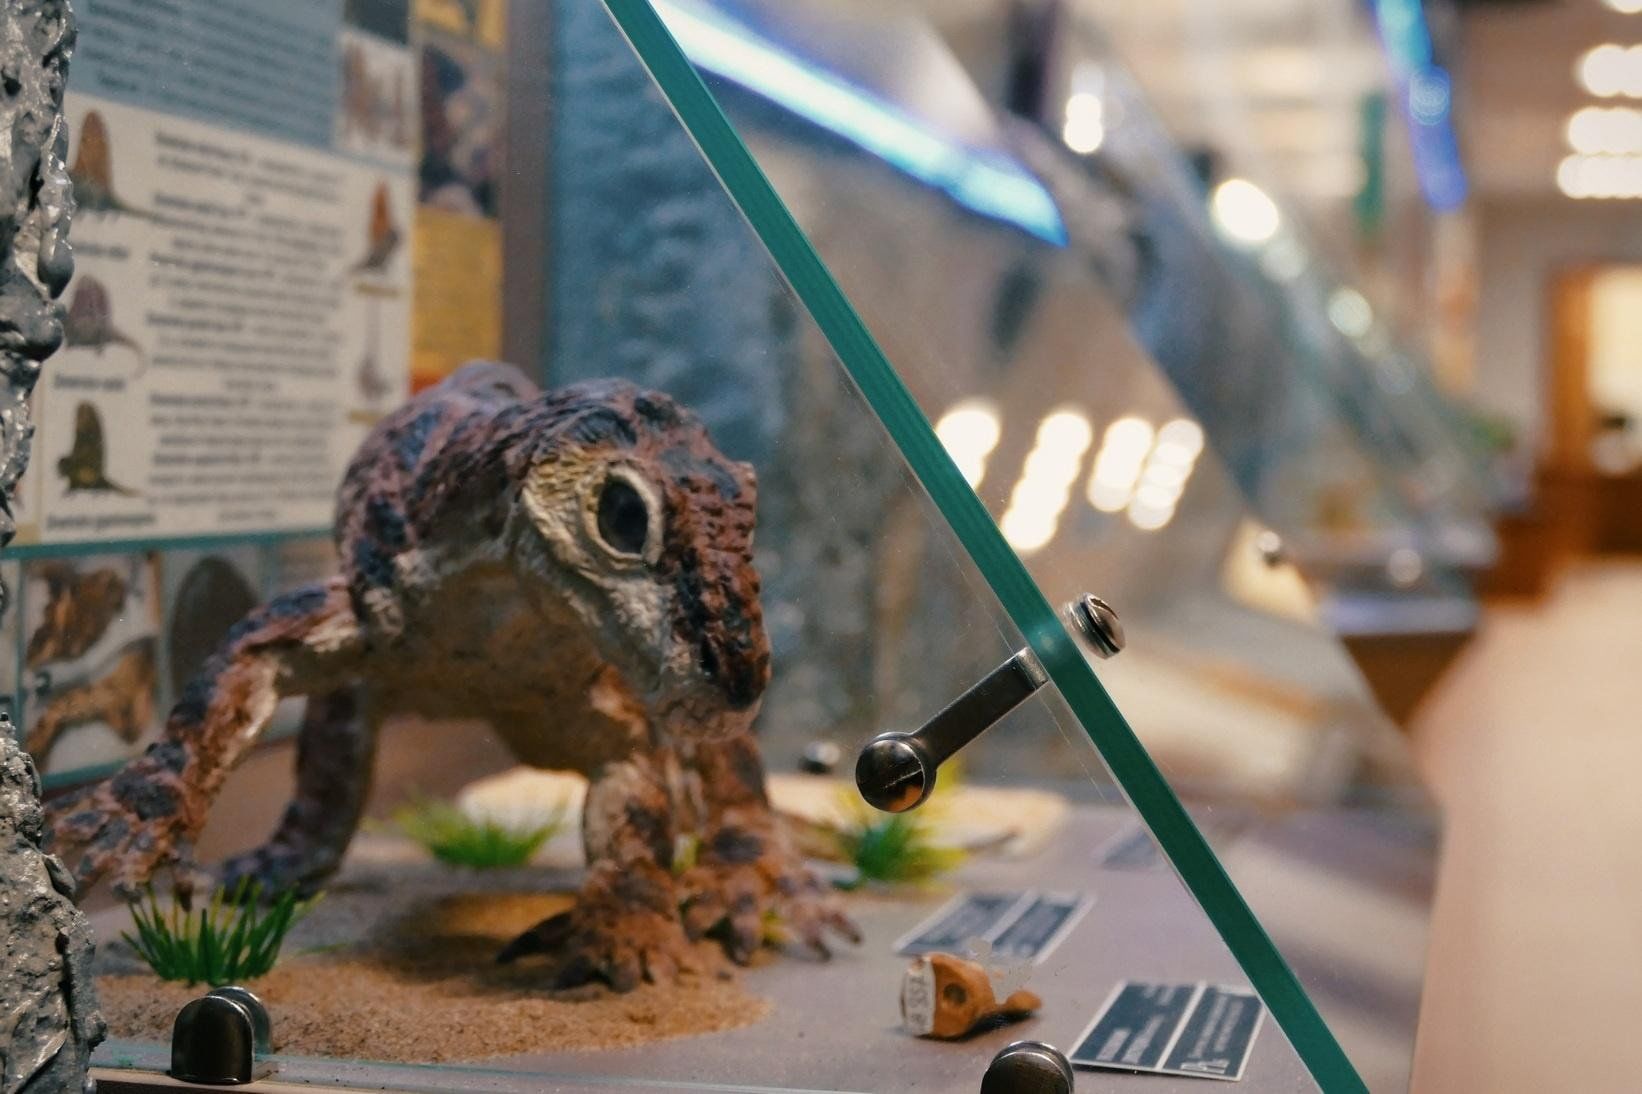 Авторская экскурсия по выставке «Пеликозавры и их мир»